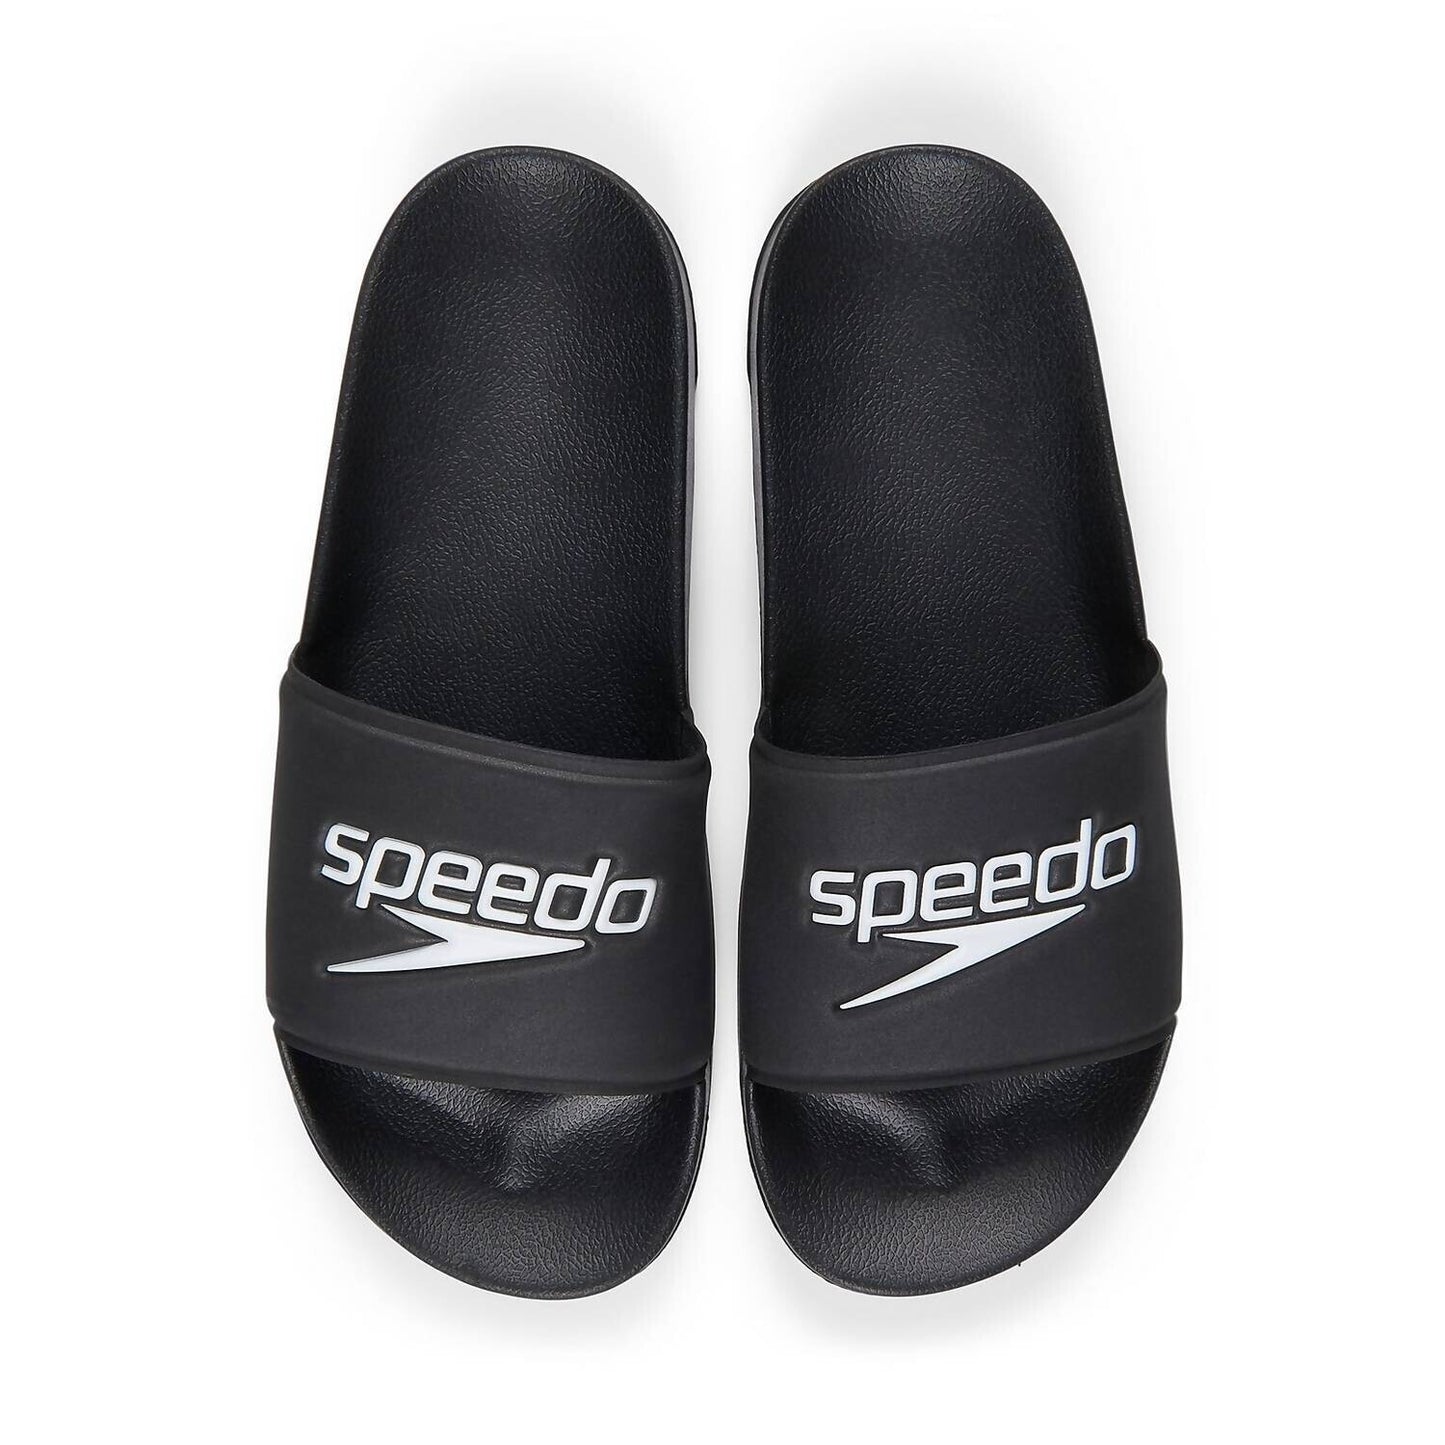 Speedo Black Unisex Deck Slide Size 11